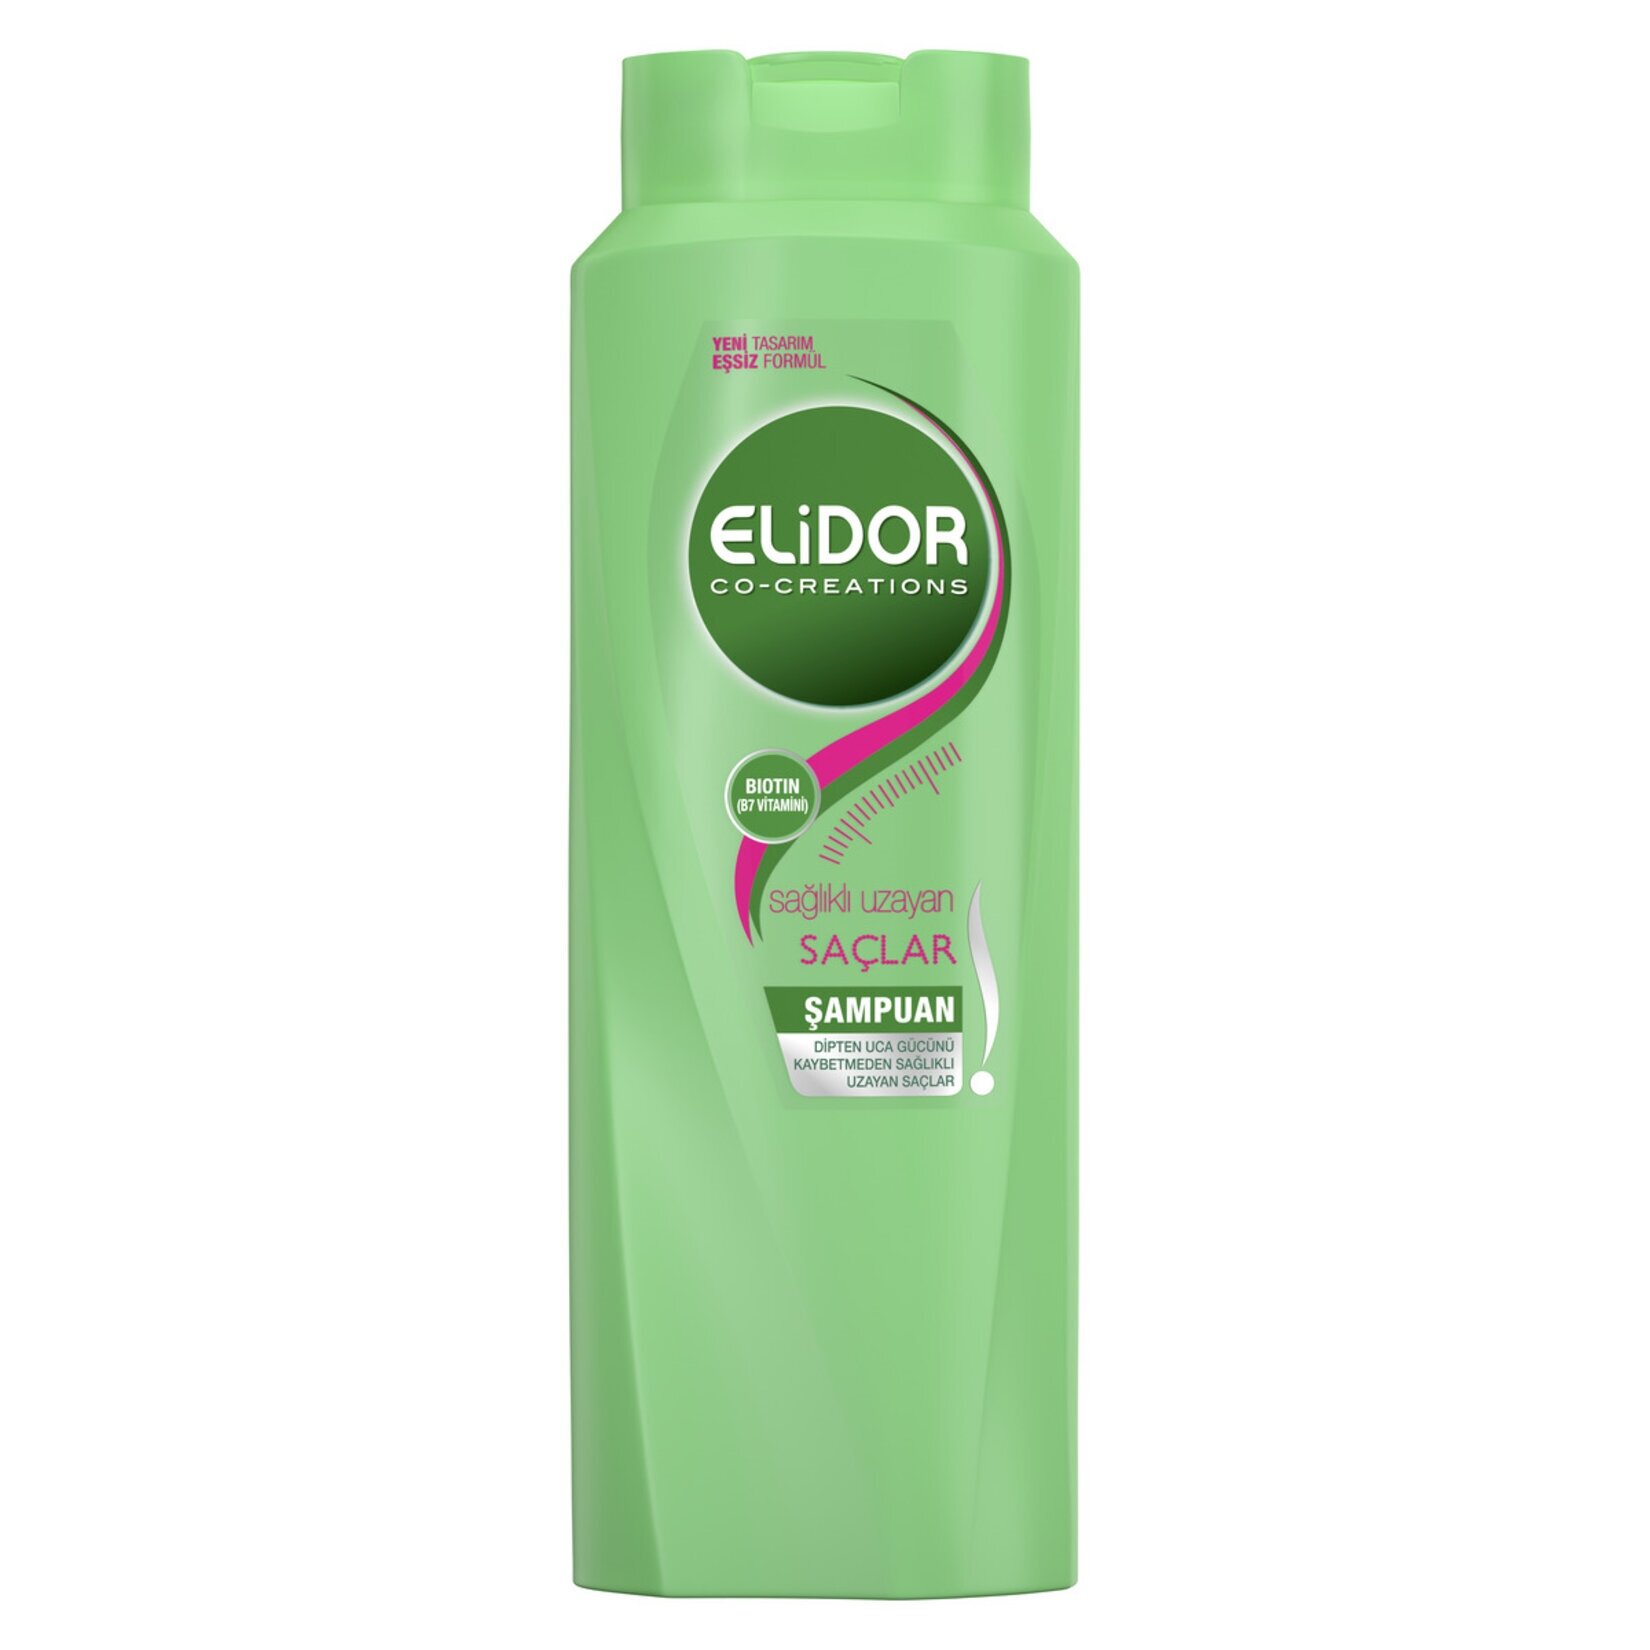 resm Elidor Şampuan Sağlıklı Uzayan Saçlar 500 ml